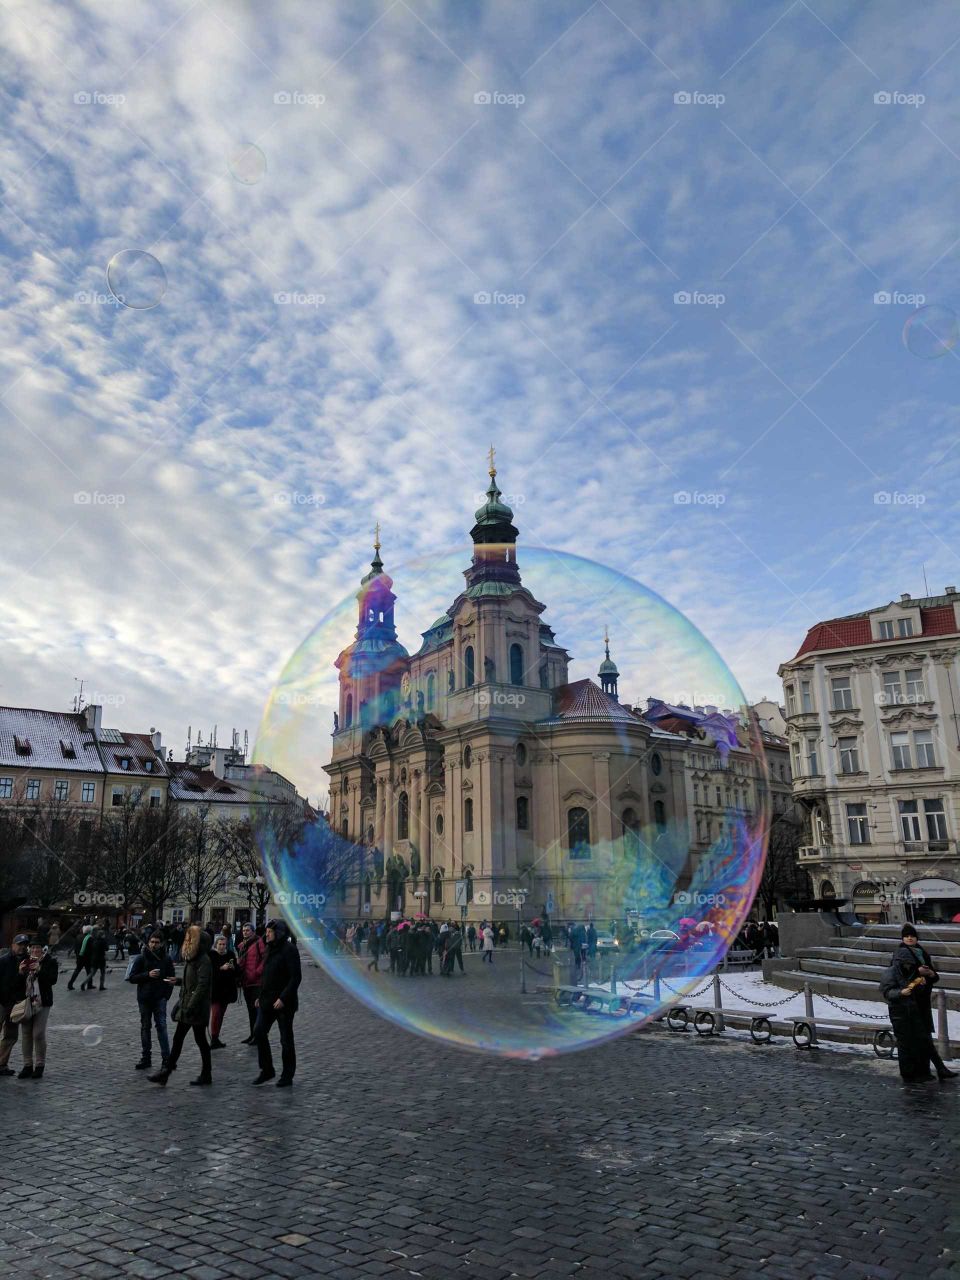 Prague in a bubble